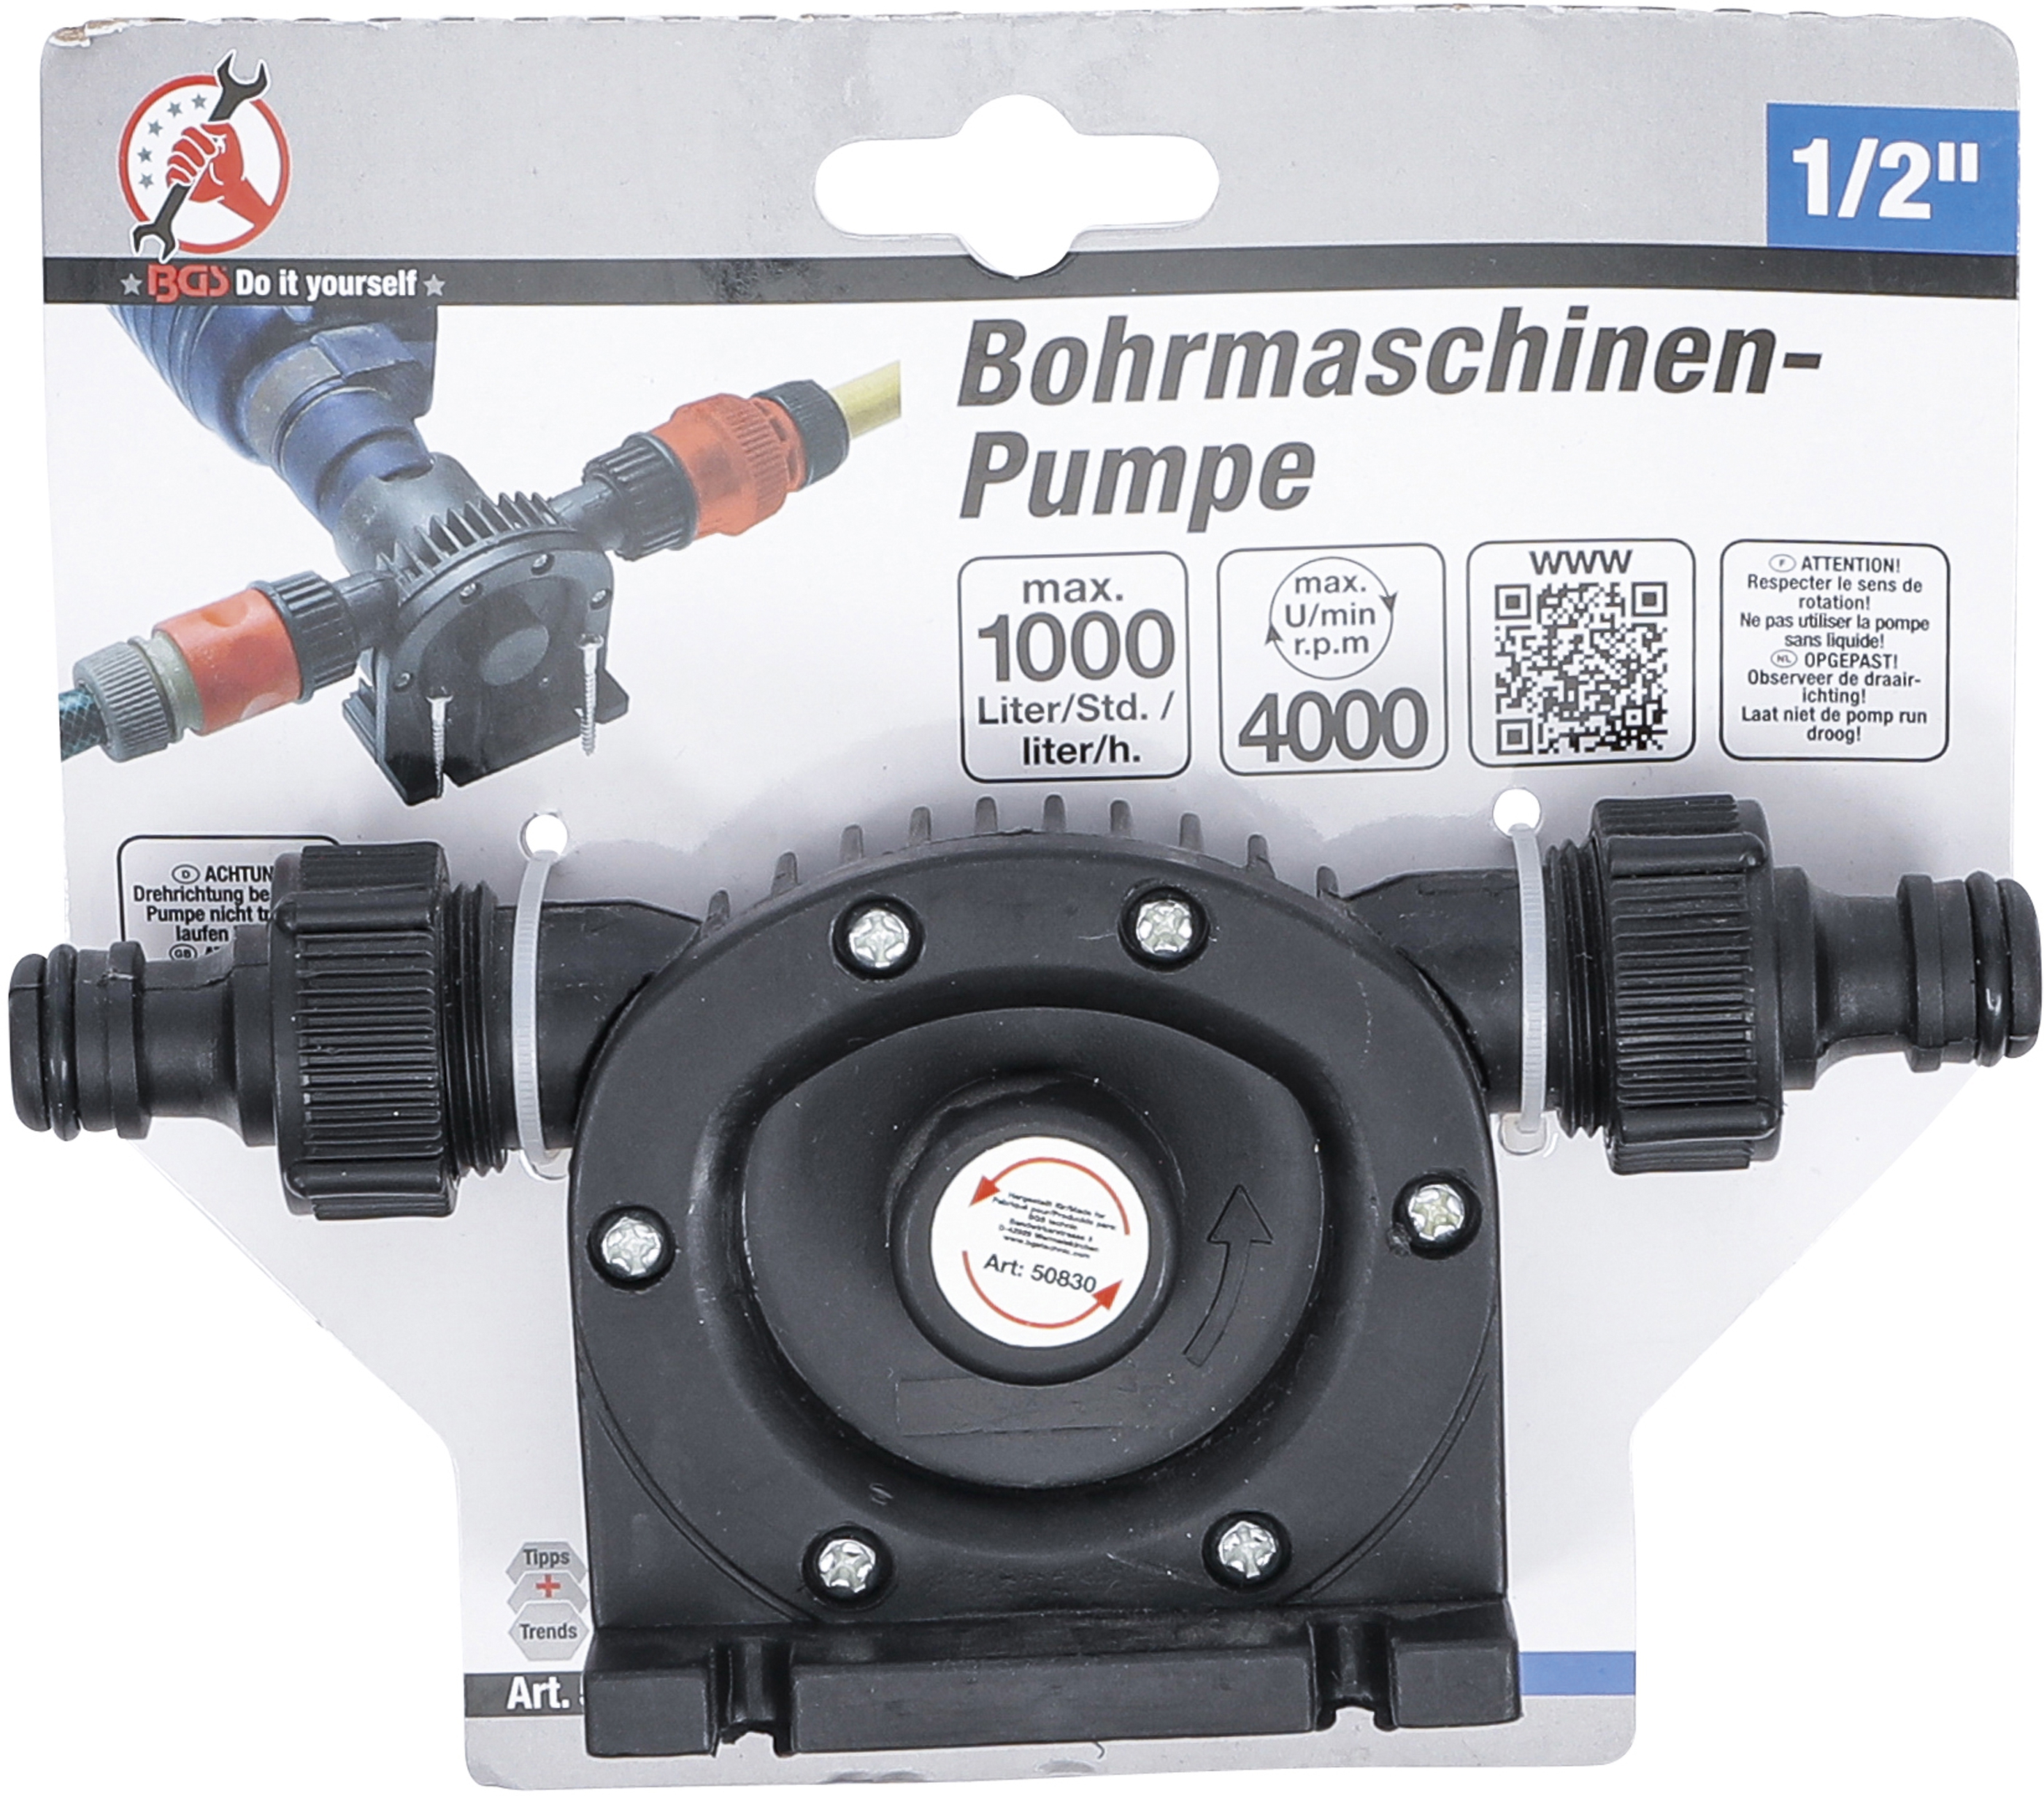 Bohrmaschinen-Pumpe BGS 50830